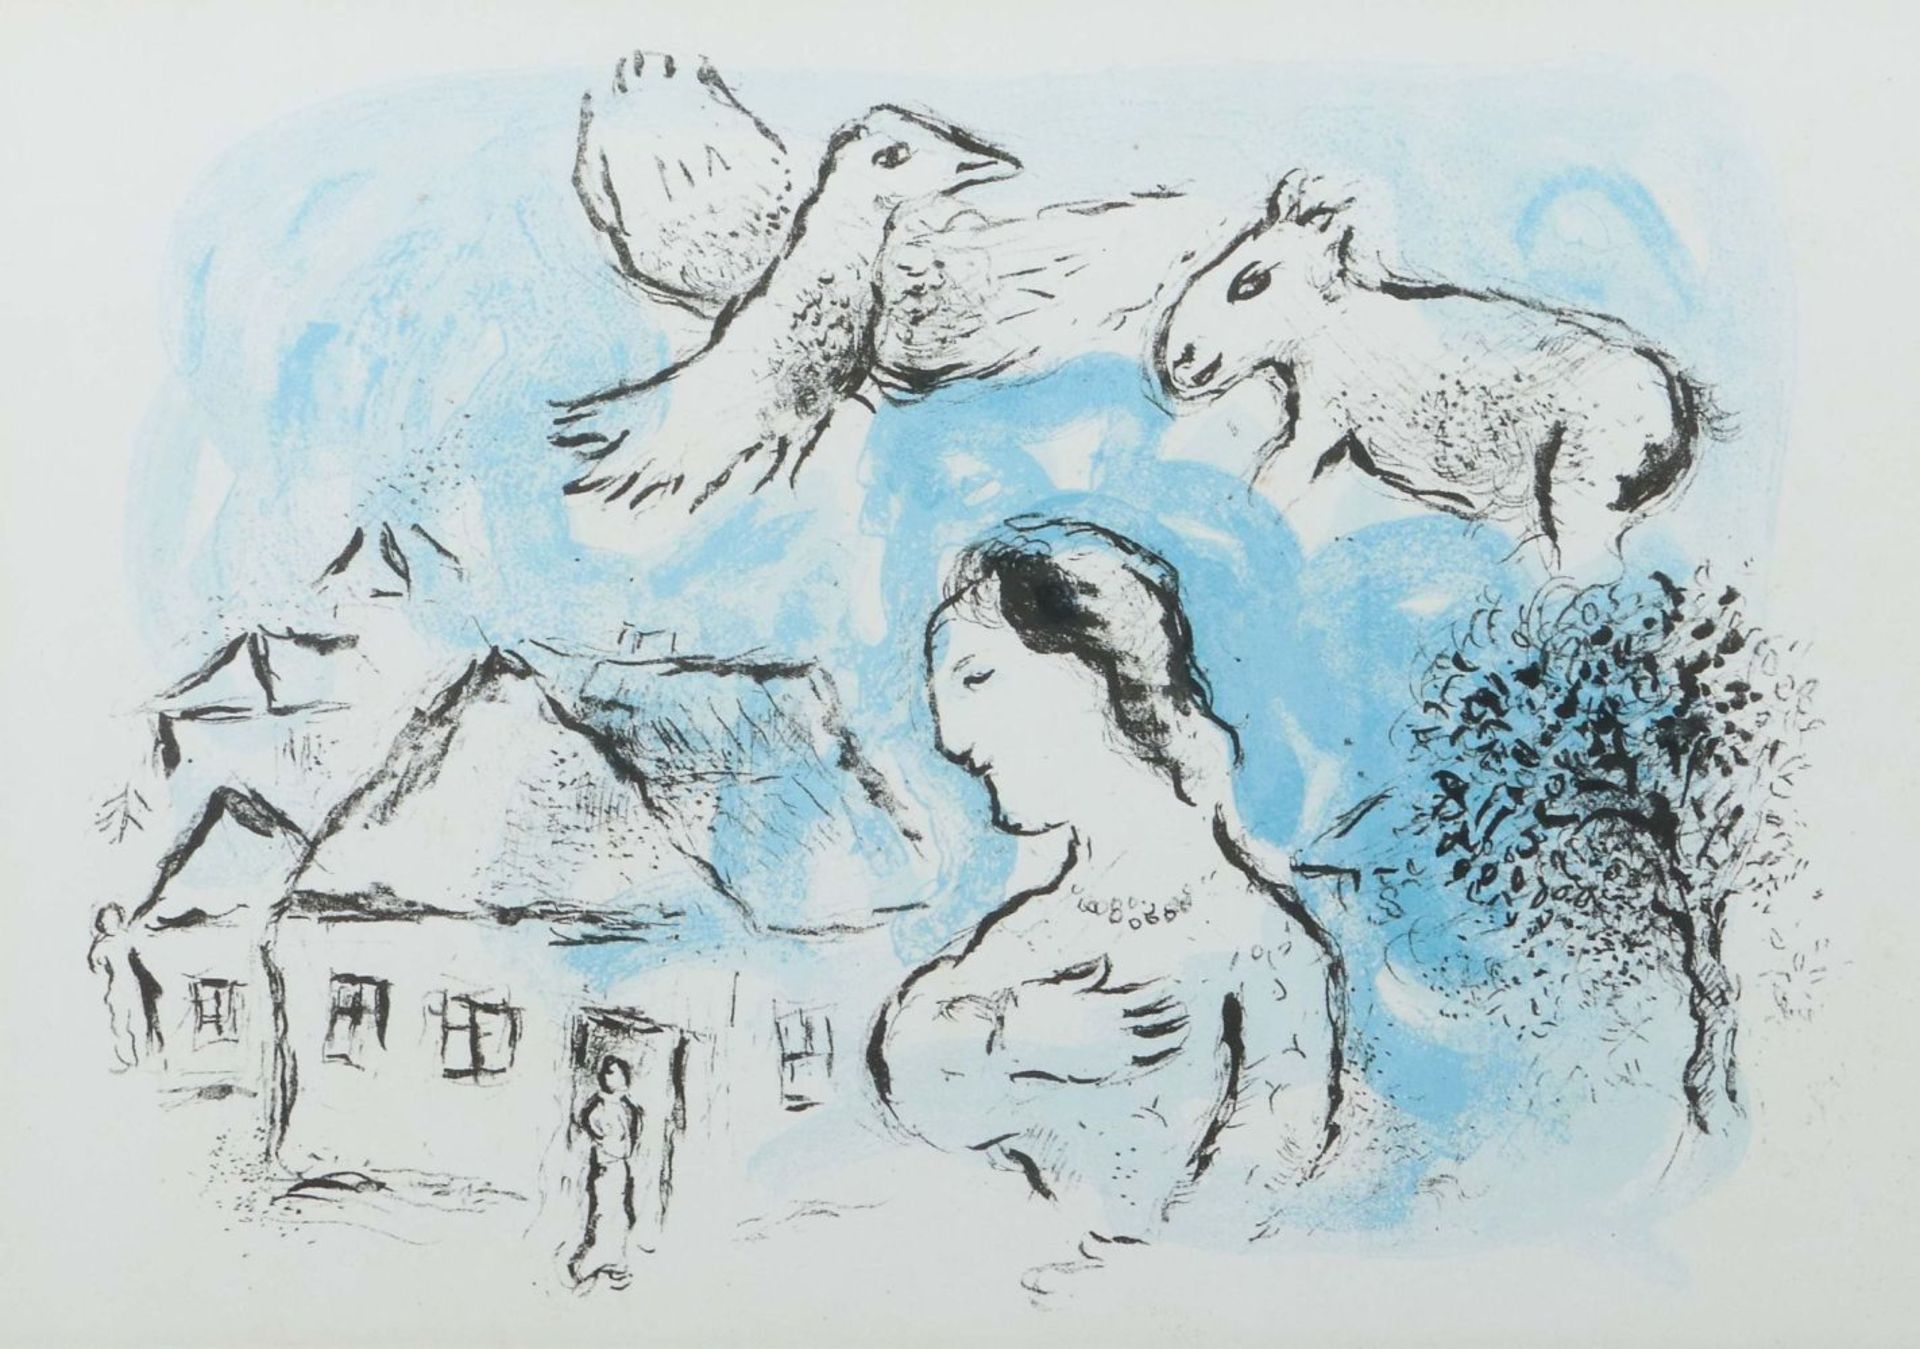 Chagall, Marc 1887 - 1985, russischer